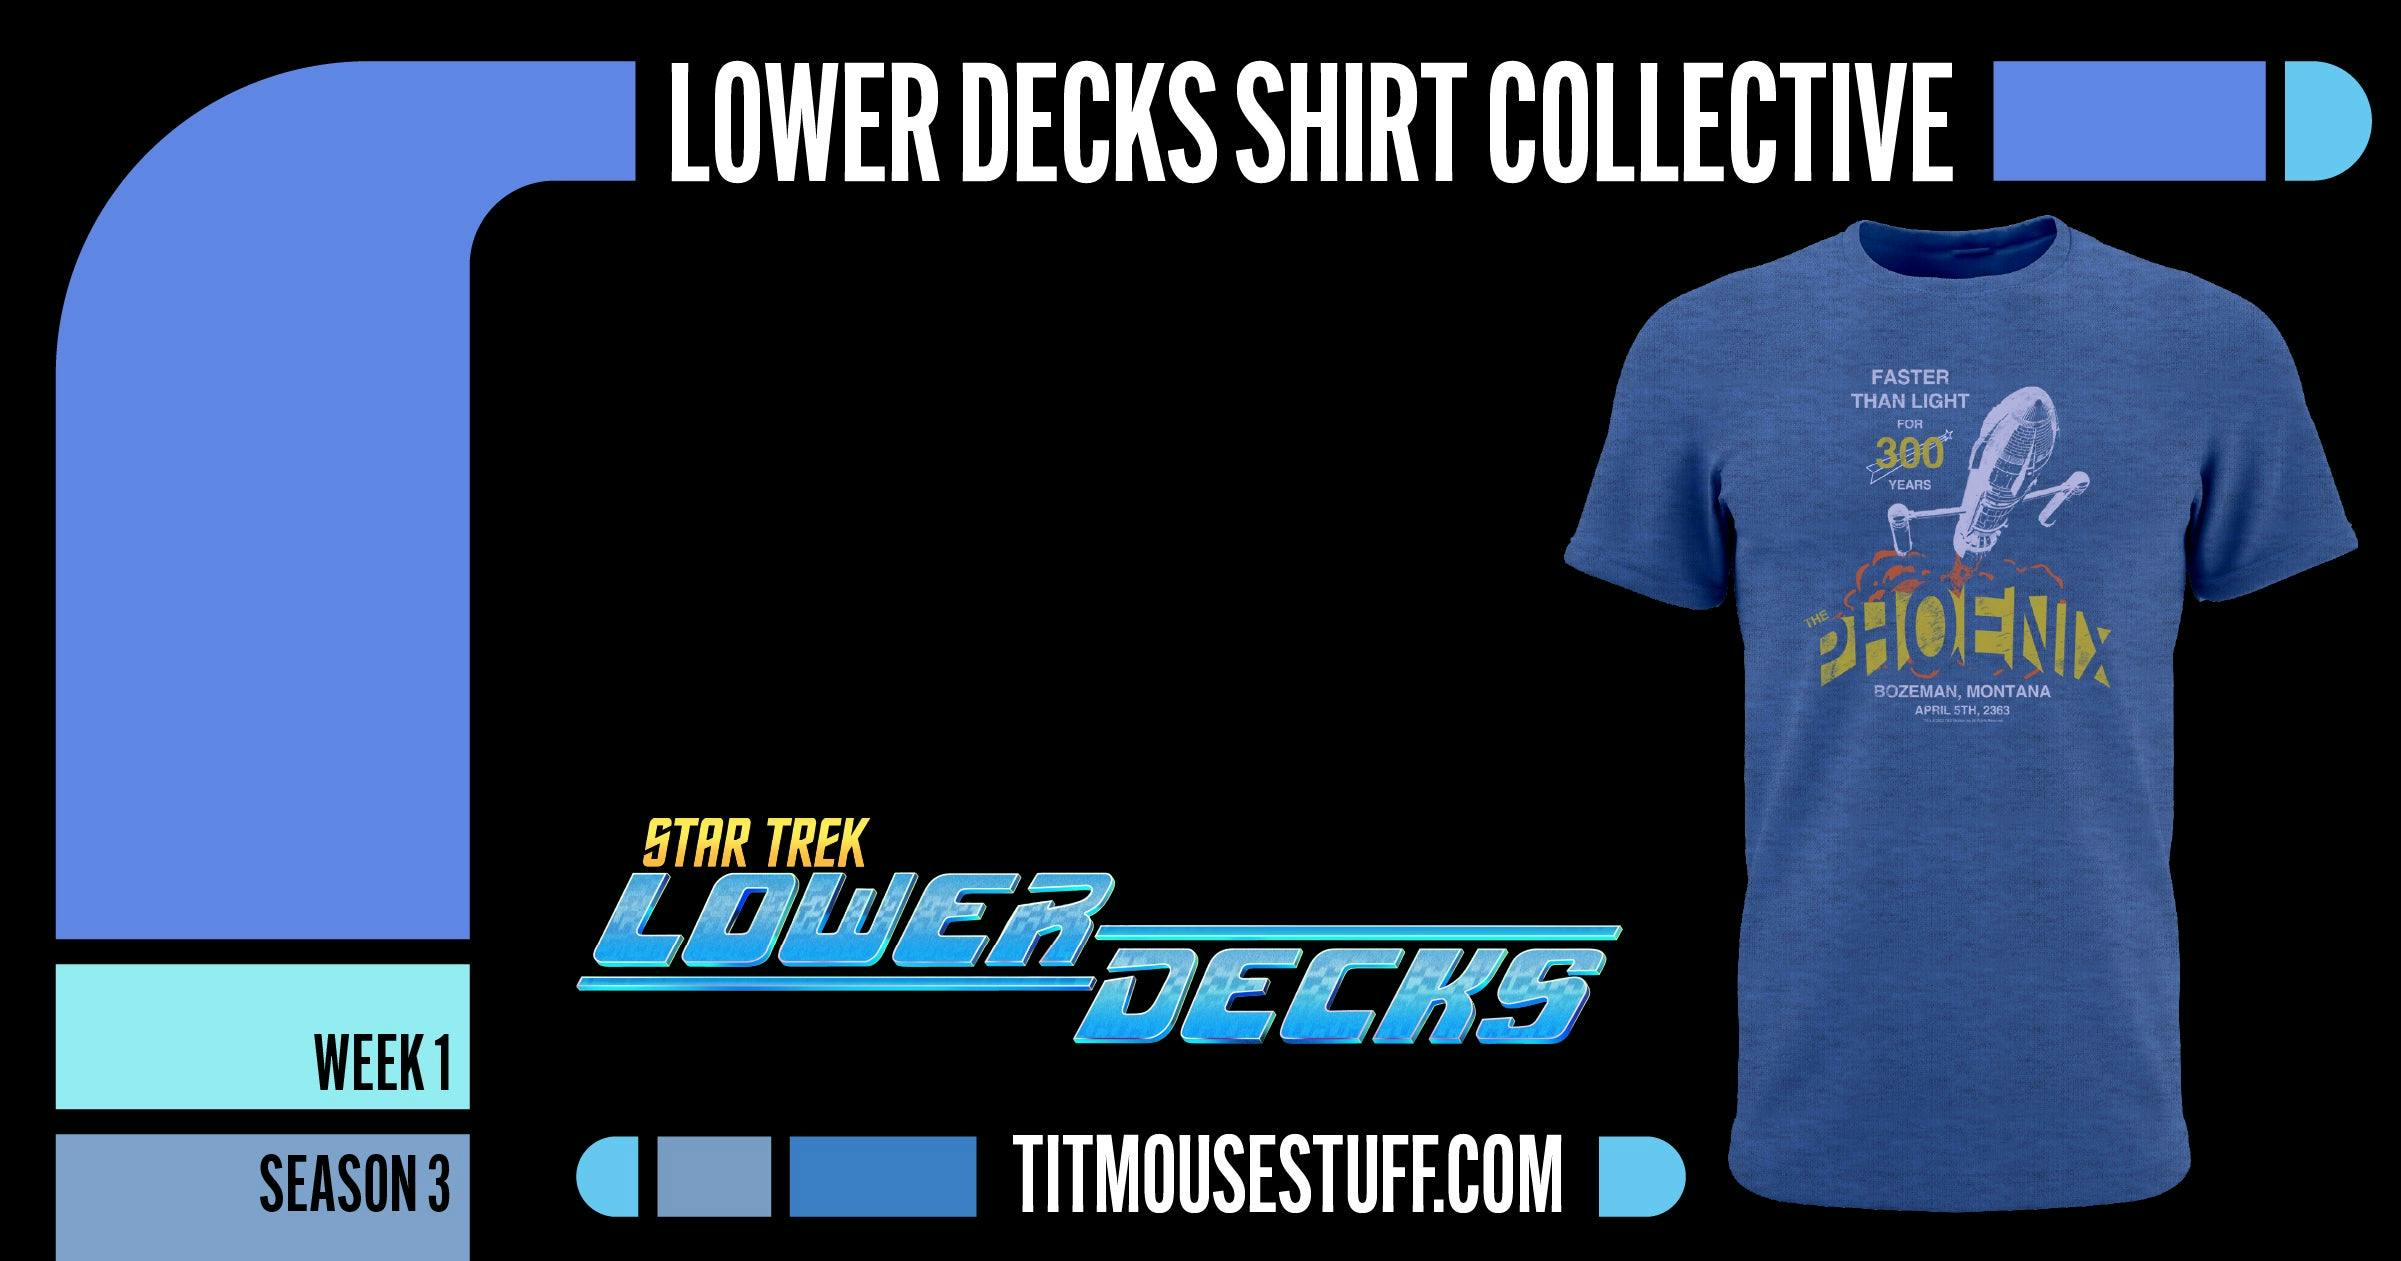 Star Trek: Lower Decks T-Shirt Collective - Week 1